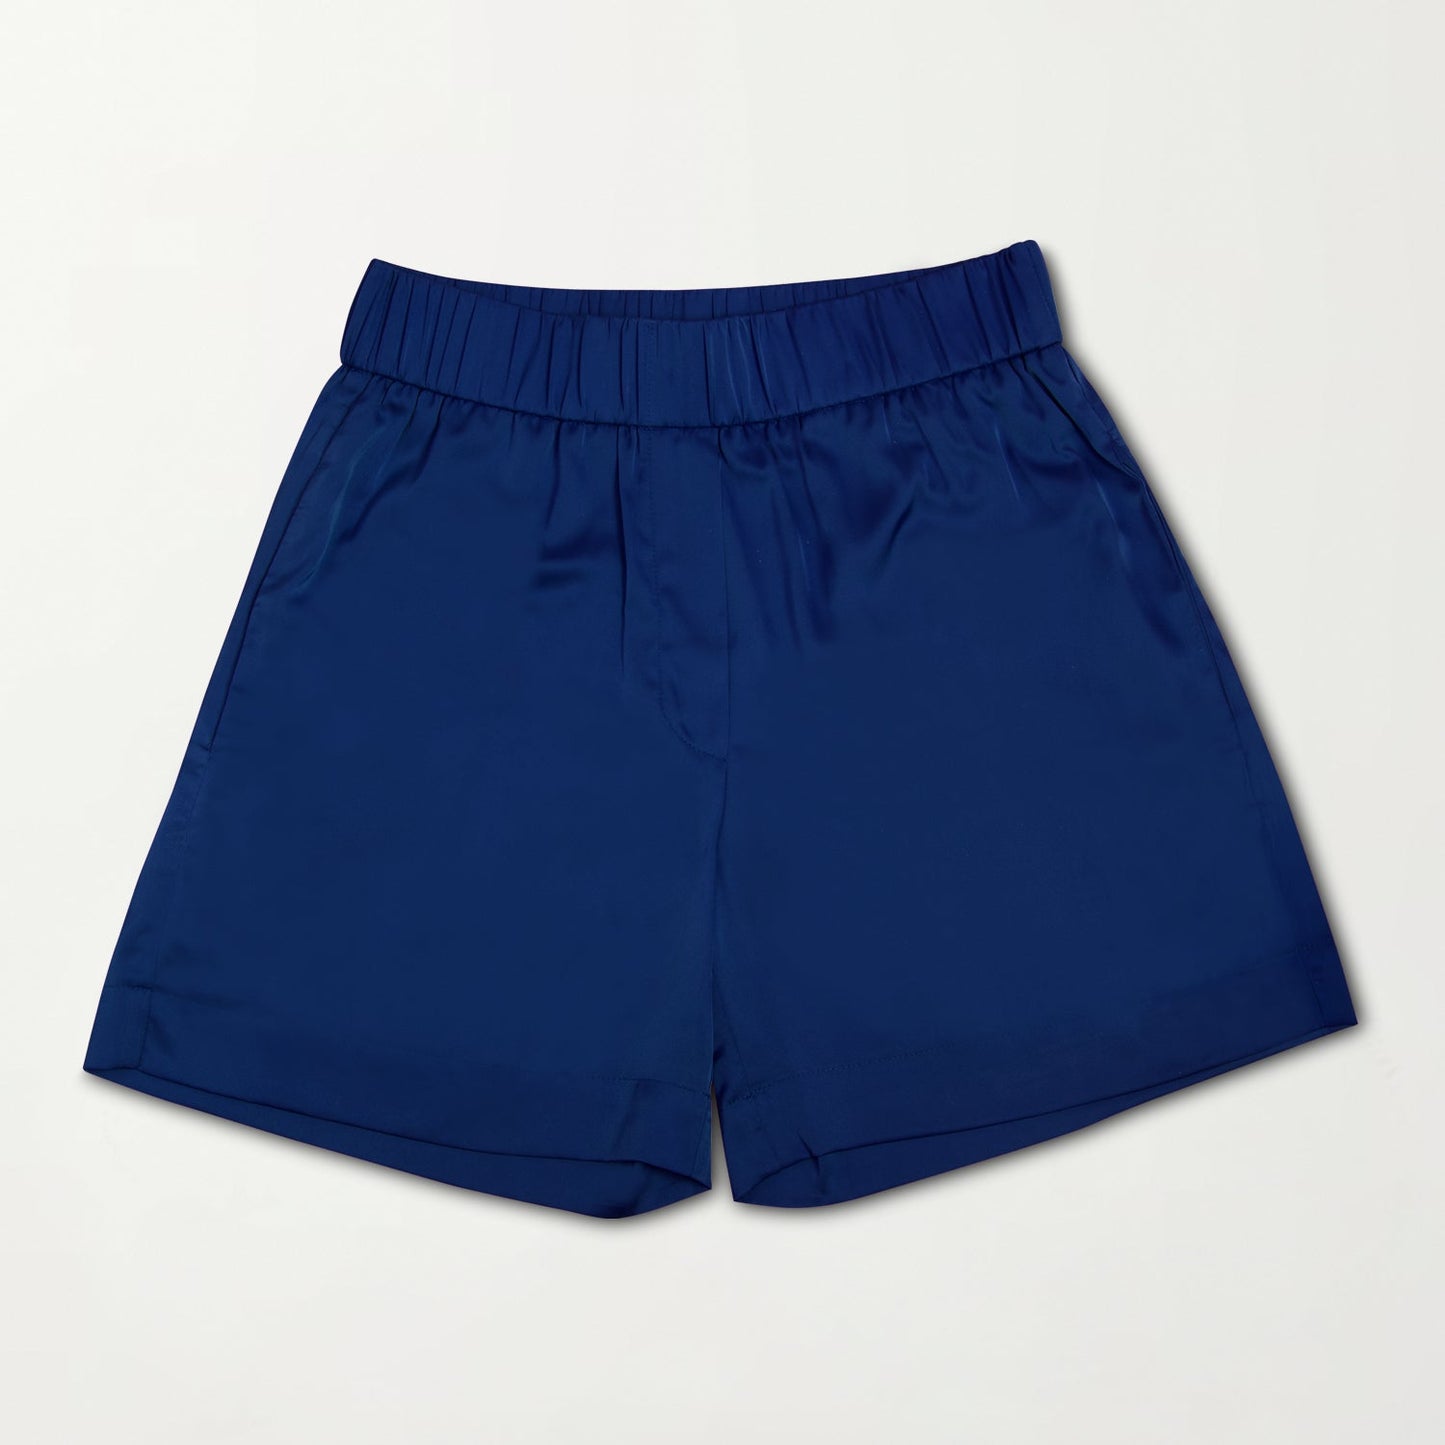 The Shorts in Mediterranean Blue